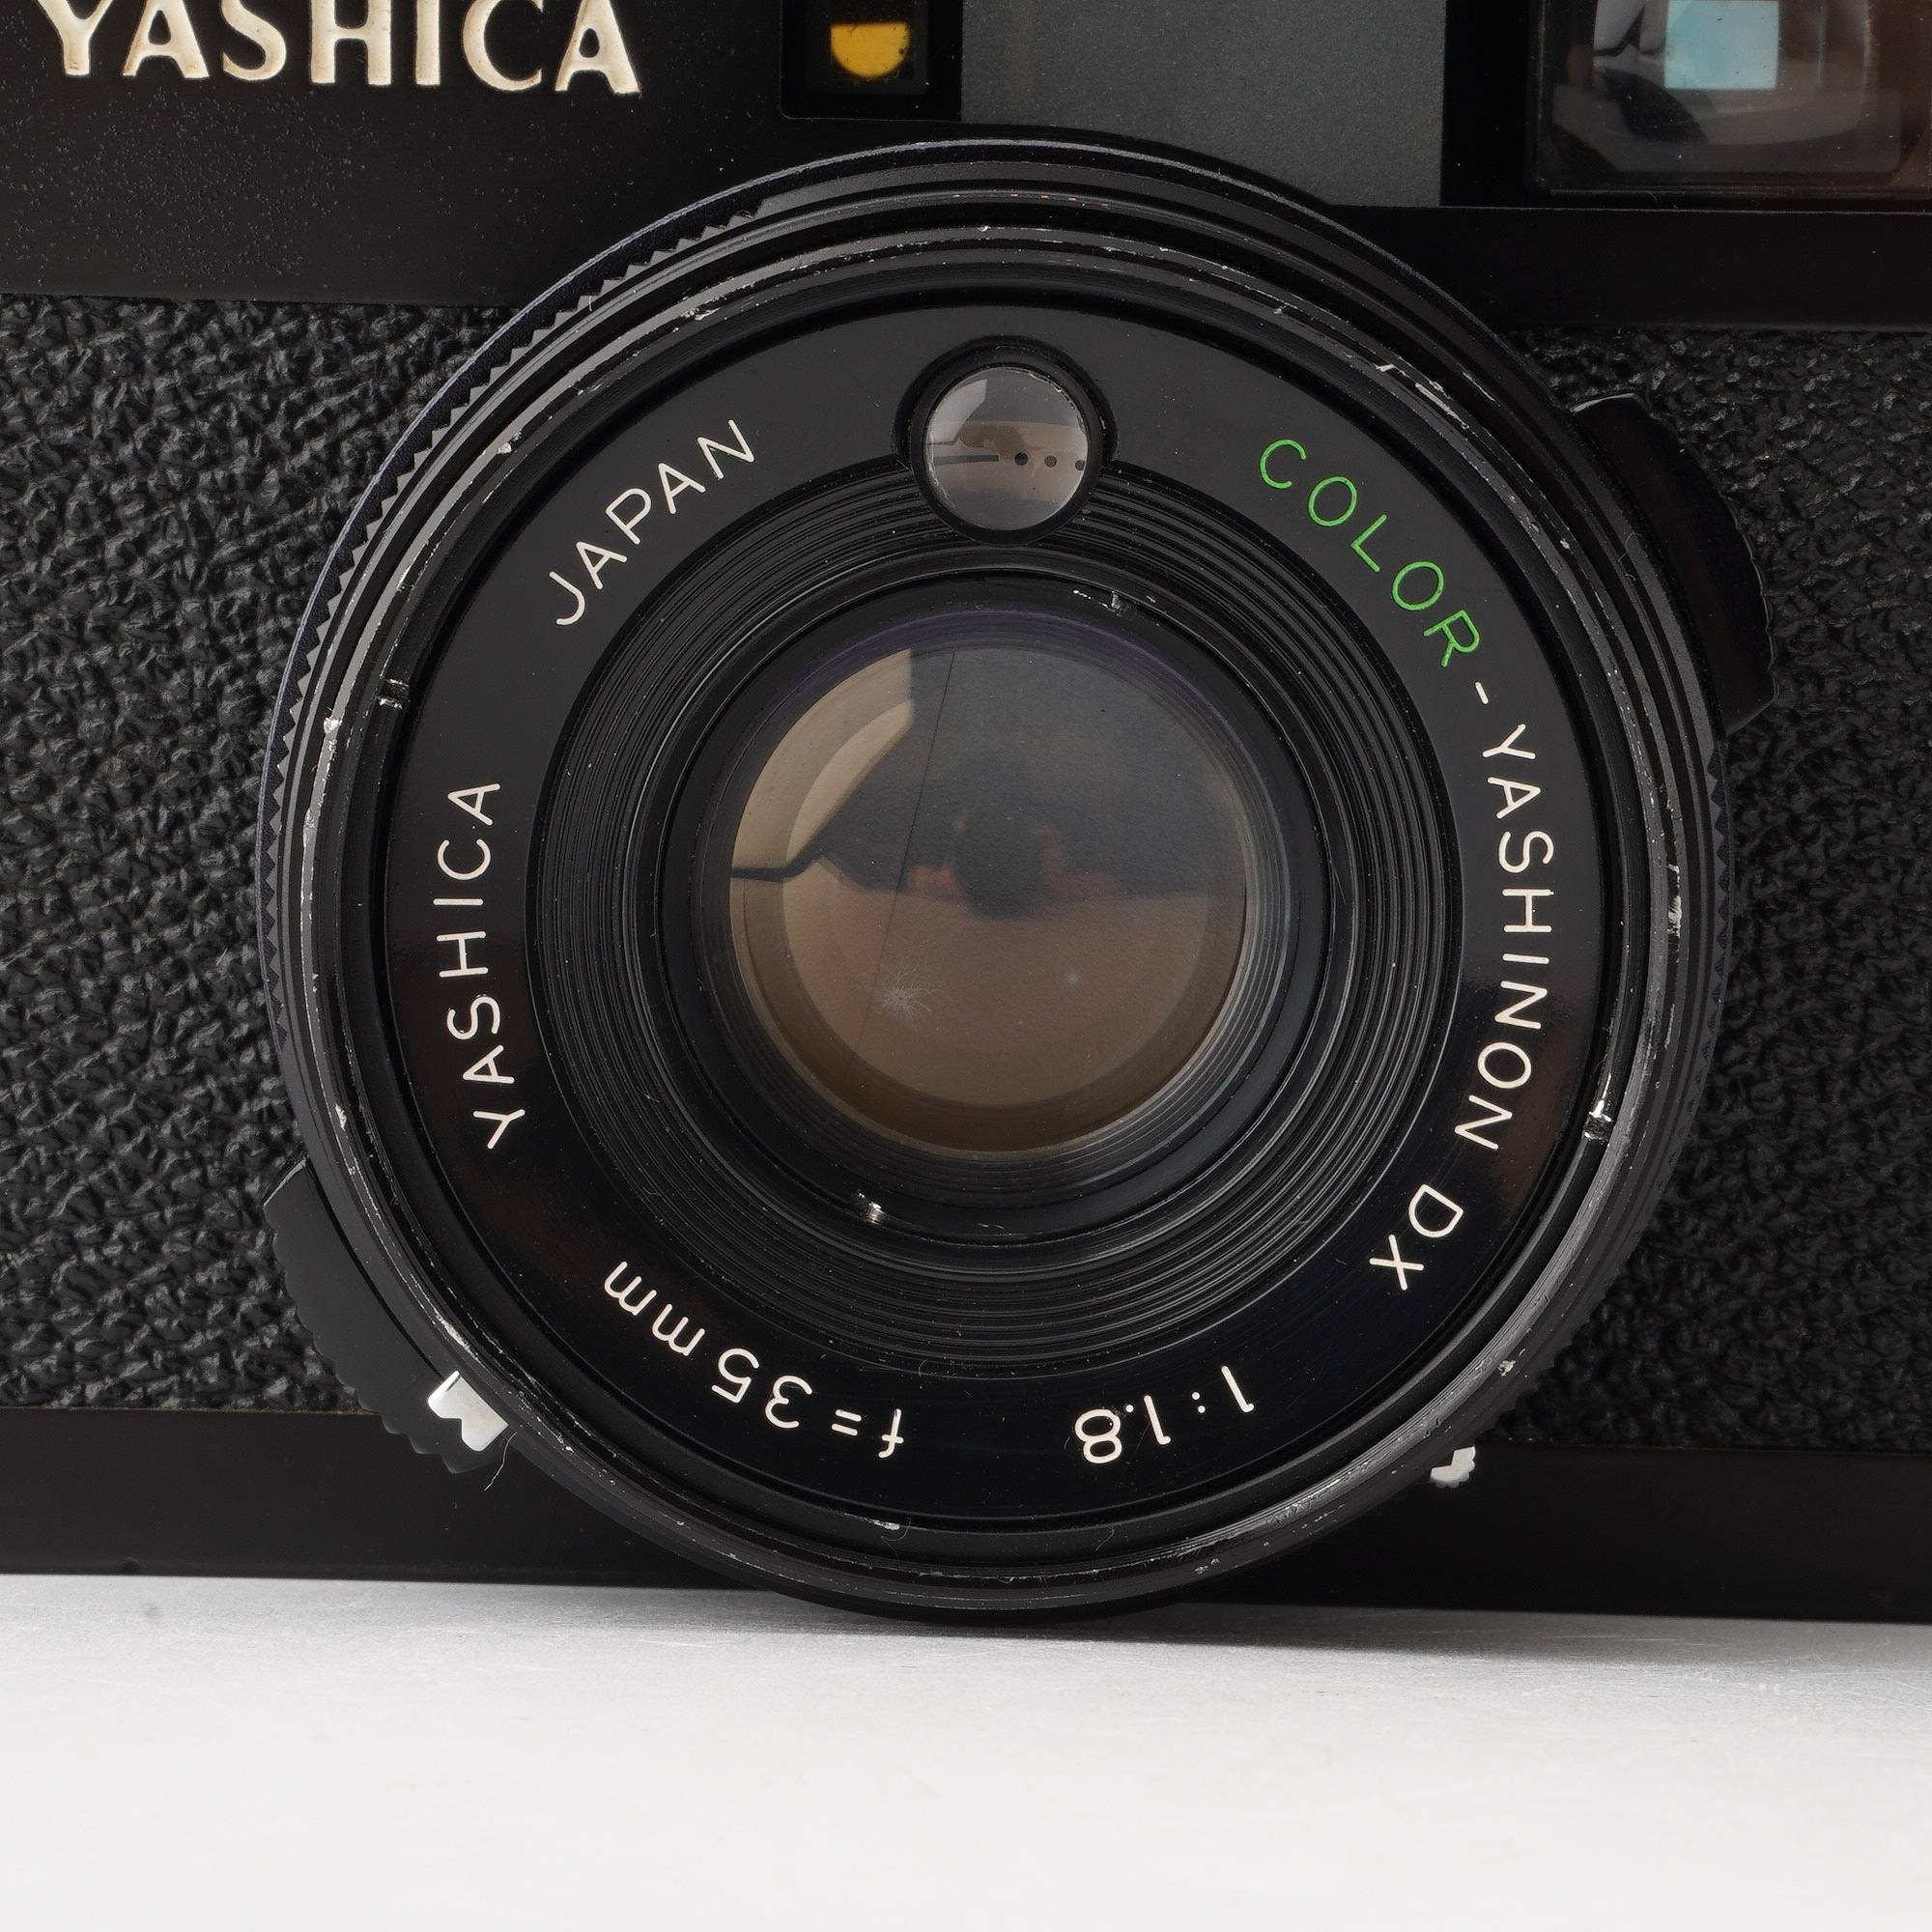 ヤシカ Yashica ELECTRO 35 CC / COLOR-YASHINON DX 35mm F1.8 